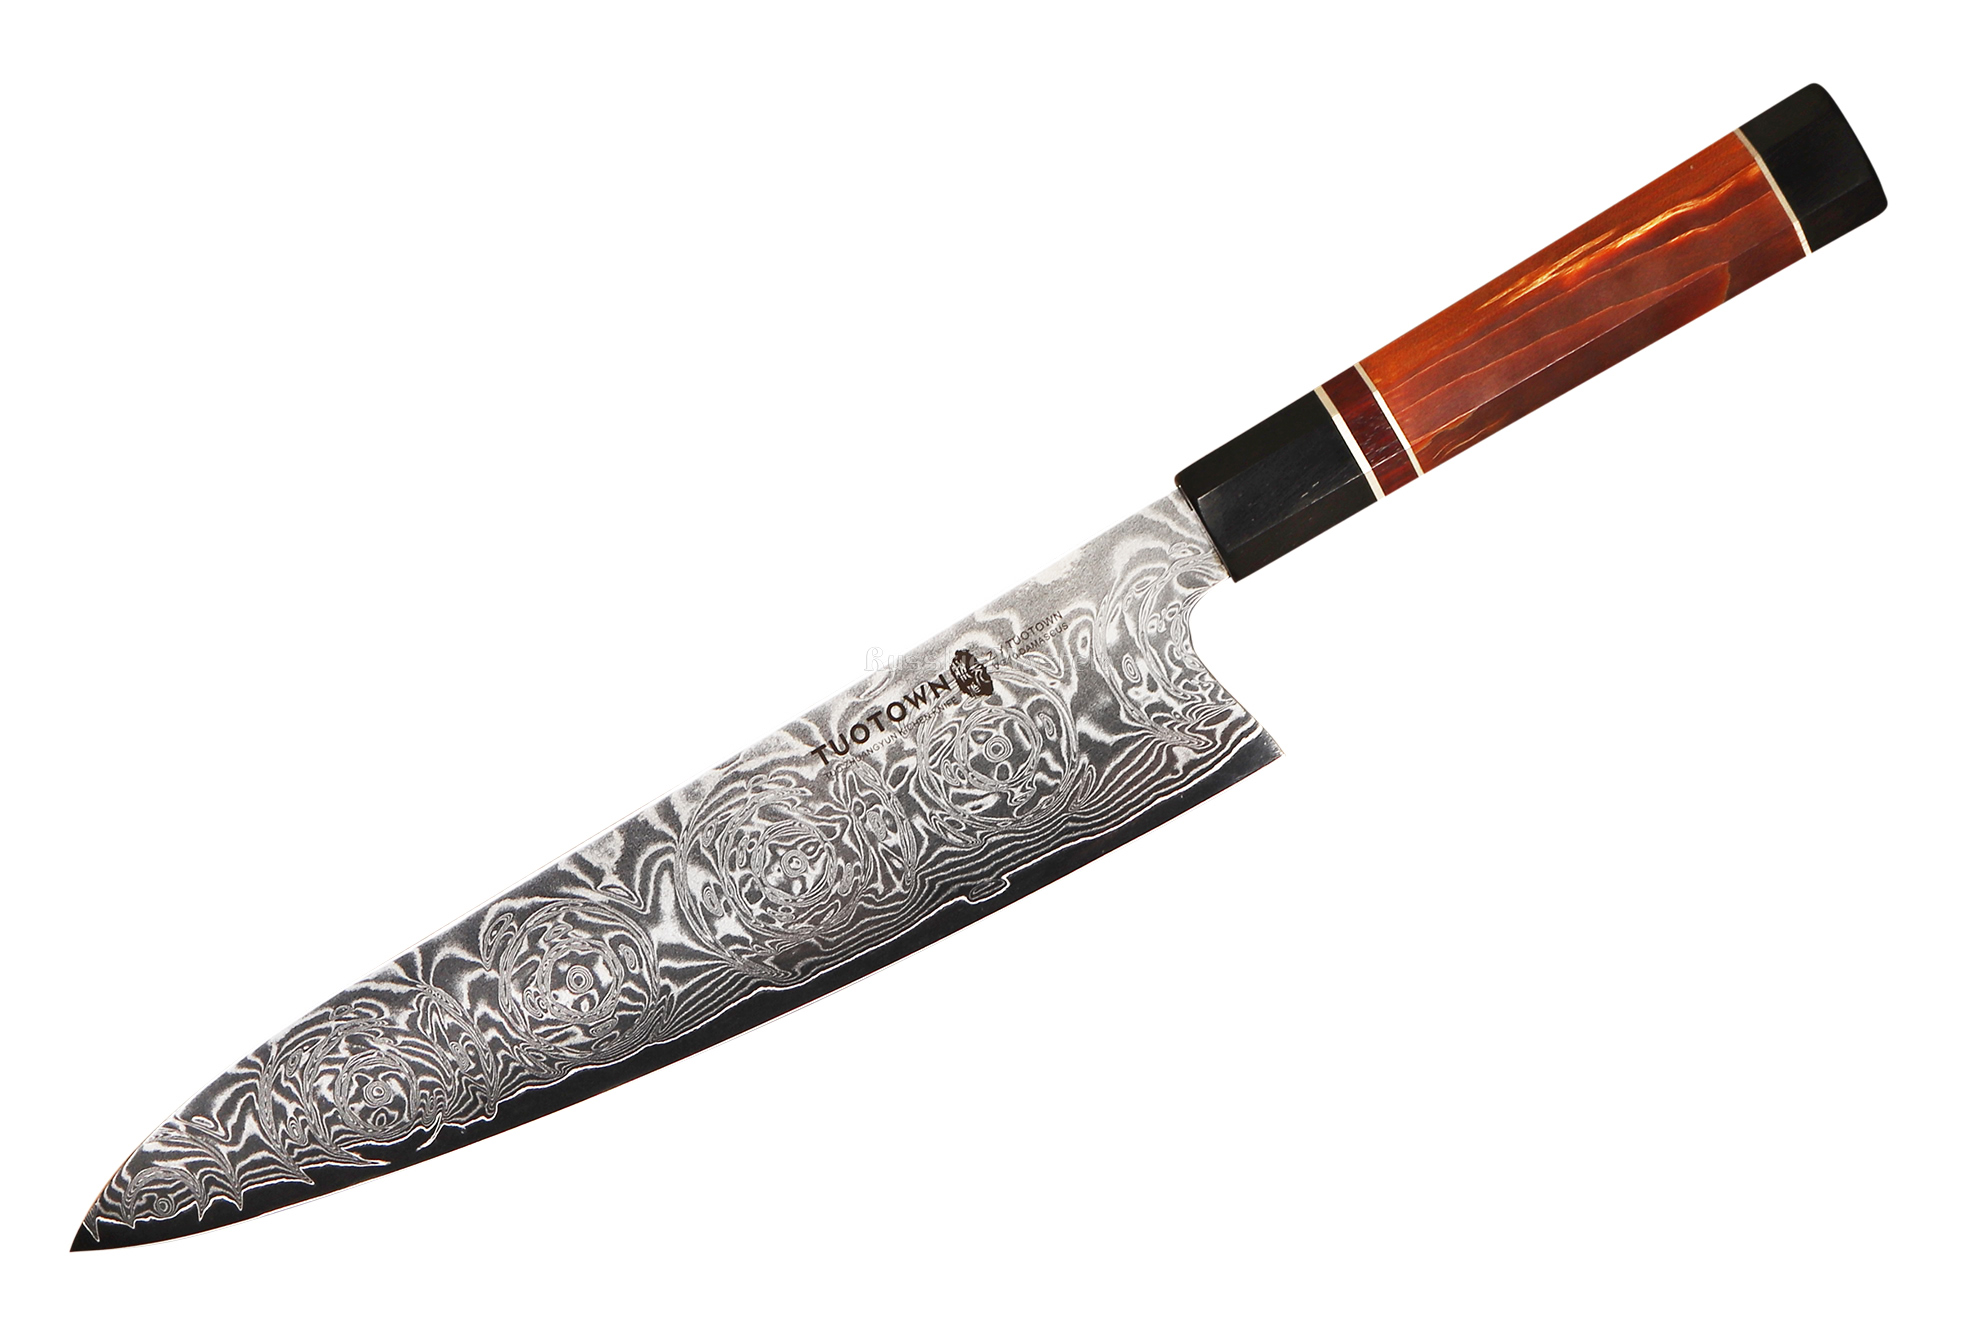 Поварской шеф-нож (кухонный нож Гюйто) TUOTOWN CH240 DM002, VG10 дамаск, восьмигранная рукоять, 24 см.